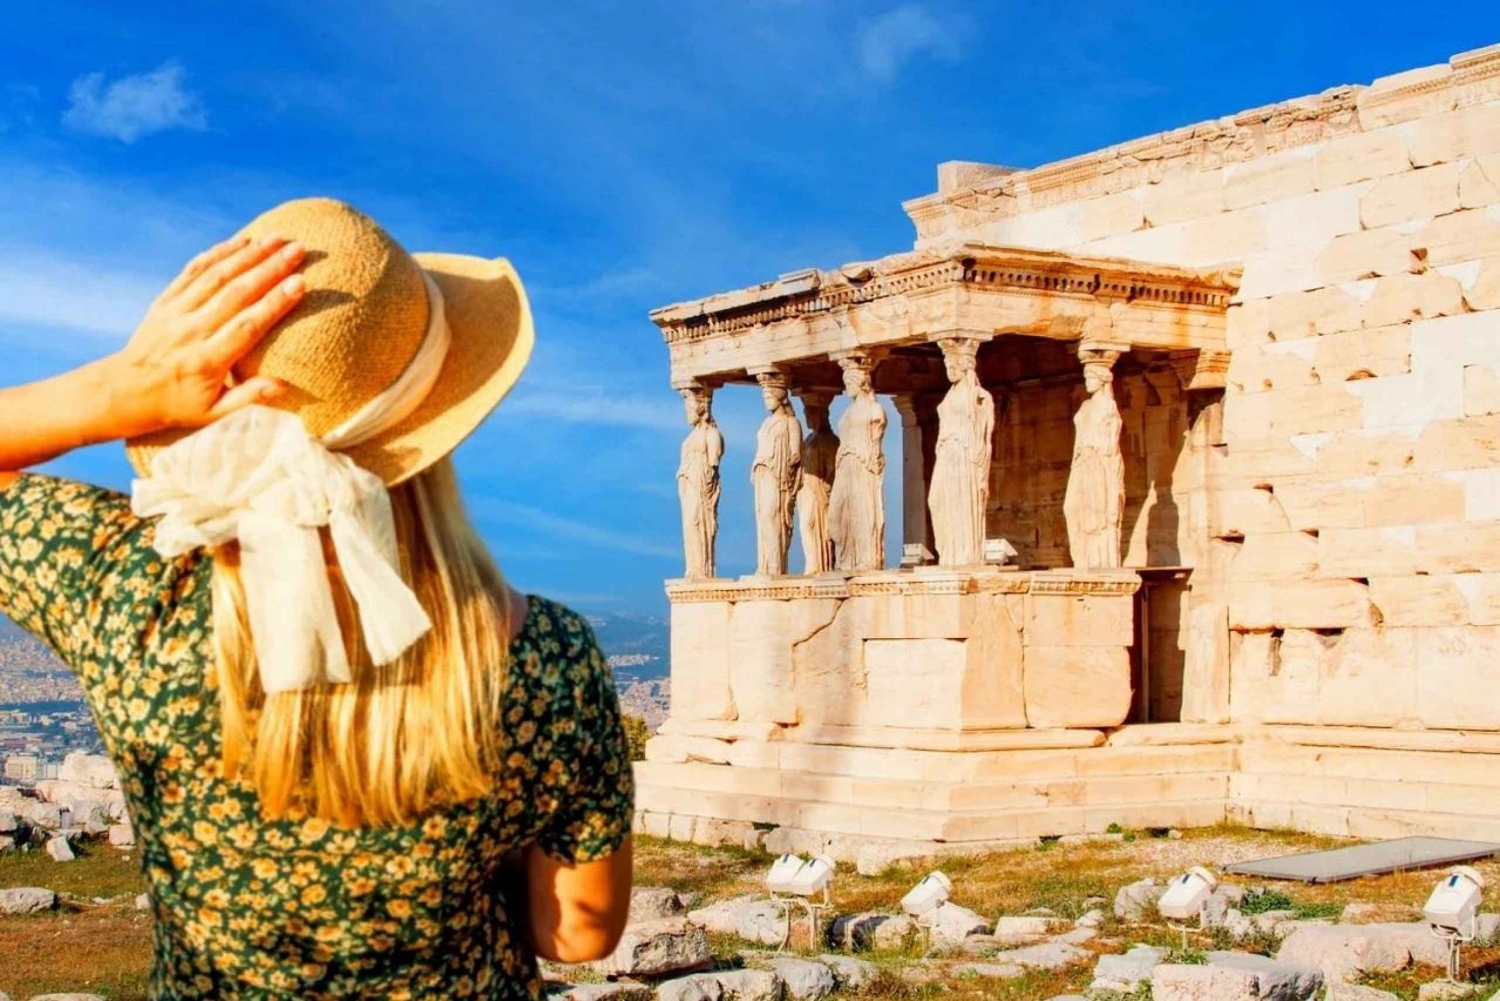 Ateenan parhaat nähtävyydet, Akropolis, ruoka- ja viinikierros yhdessä ja samassa kohteessa